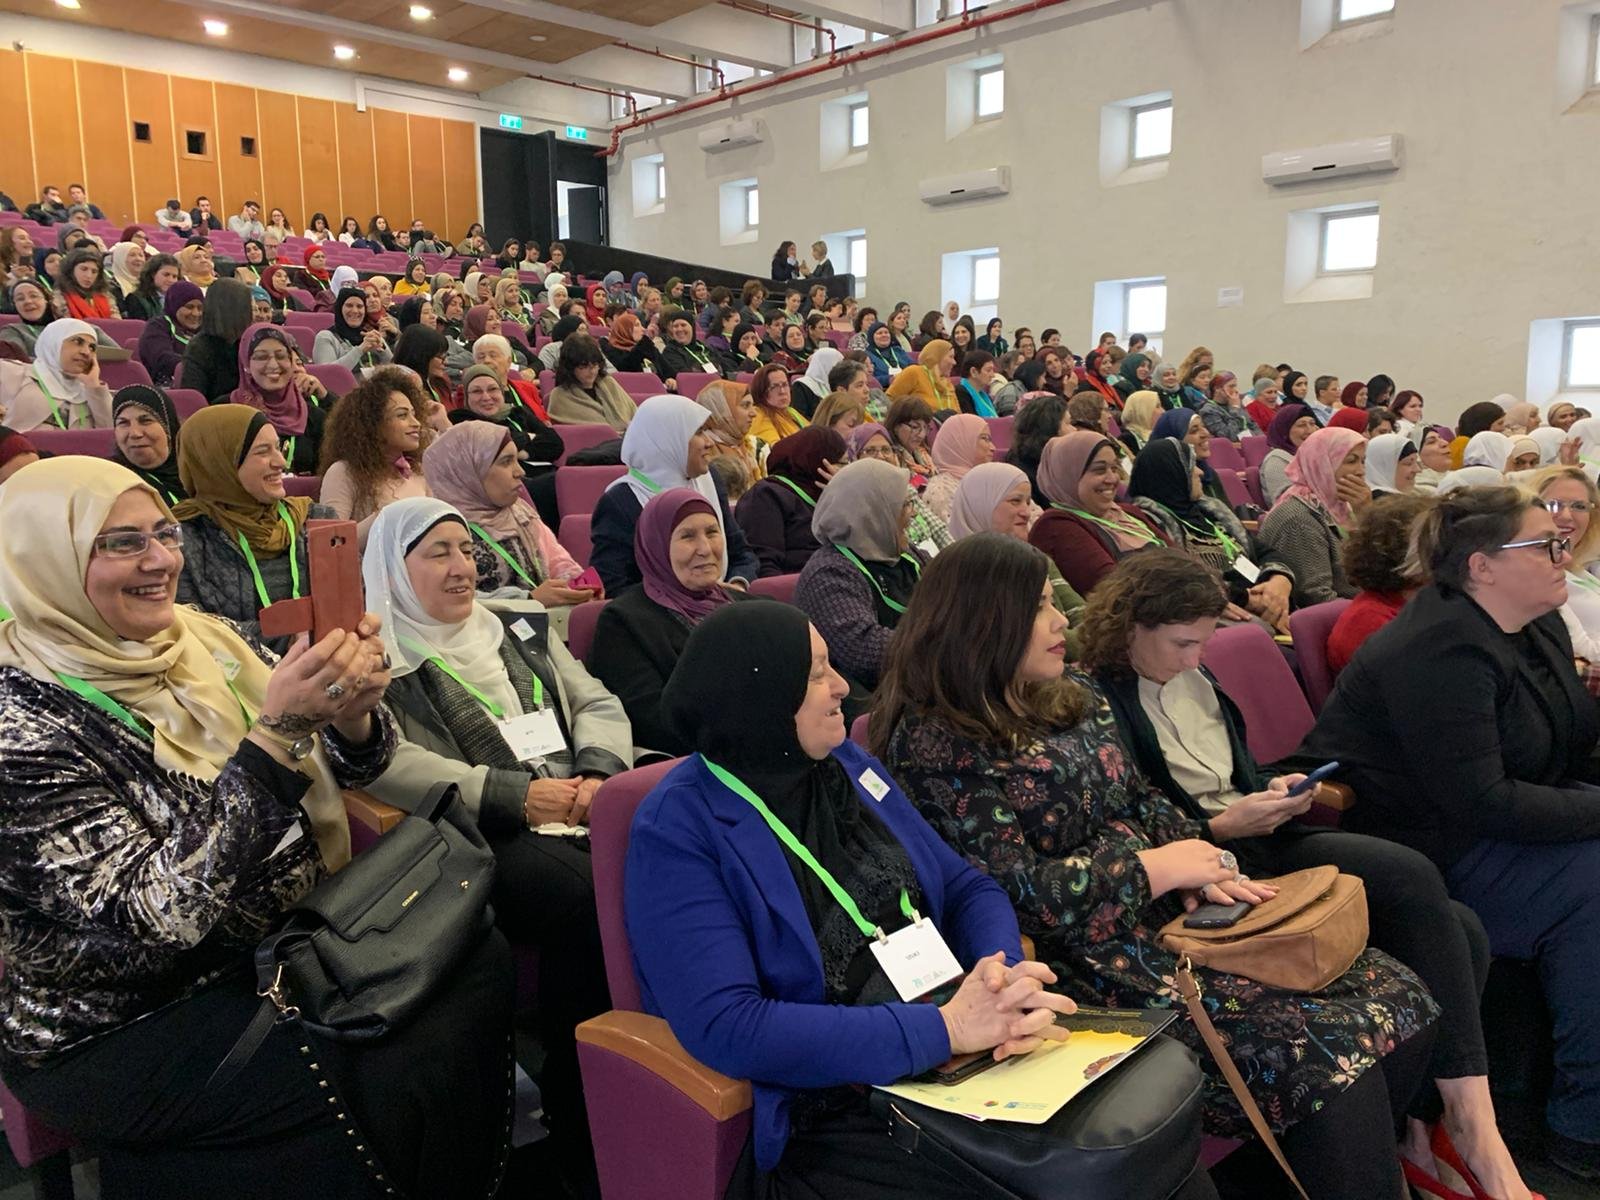 حضور واسع في مؤتمر "نساء يصنعن التغيير" في جفعات حبيبة -8